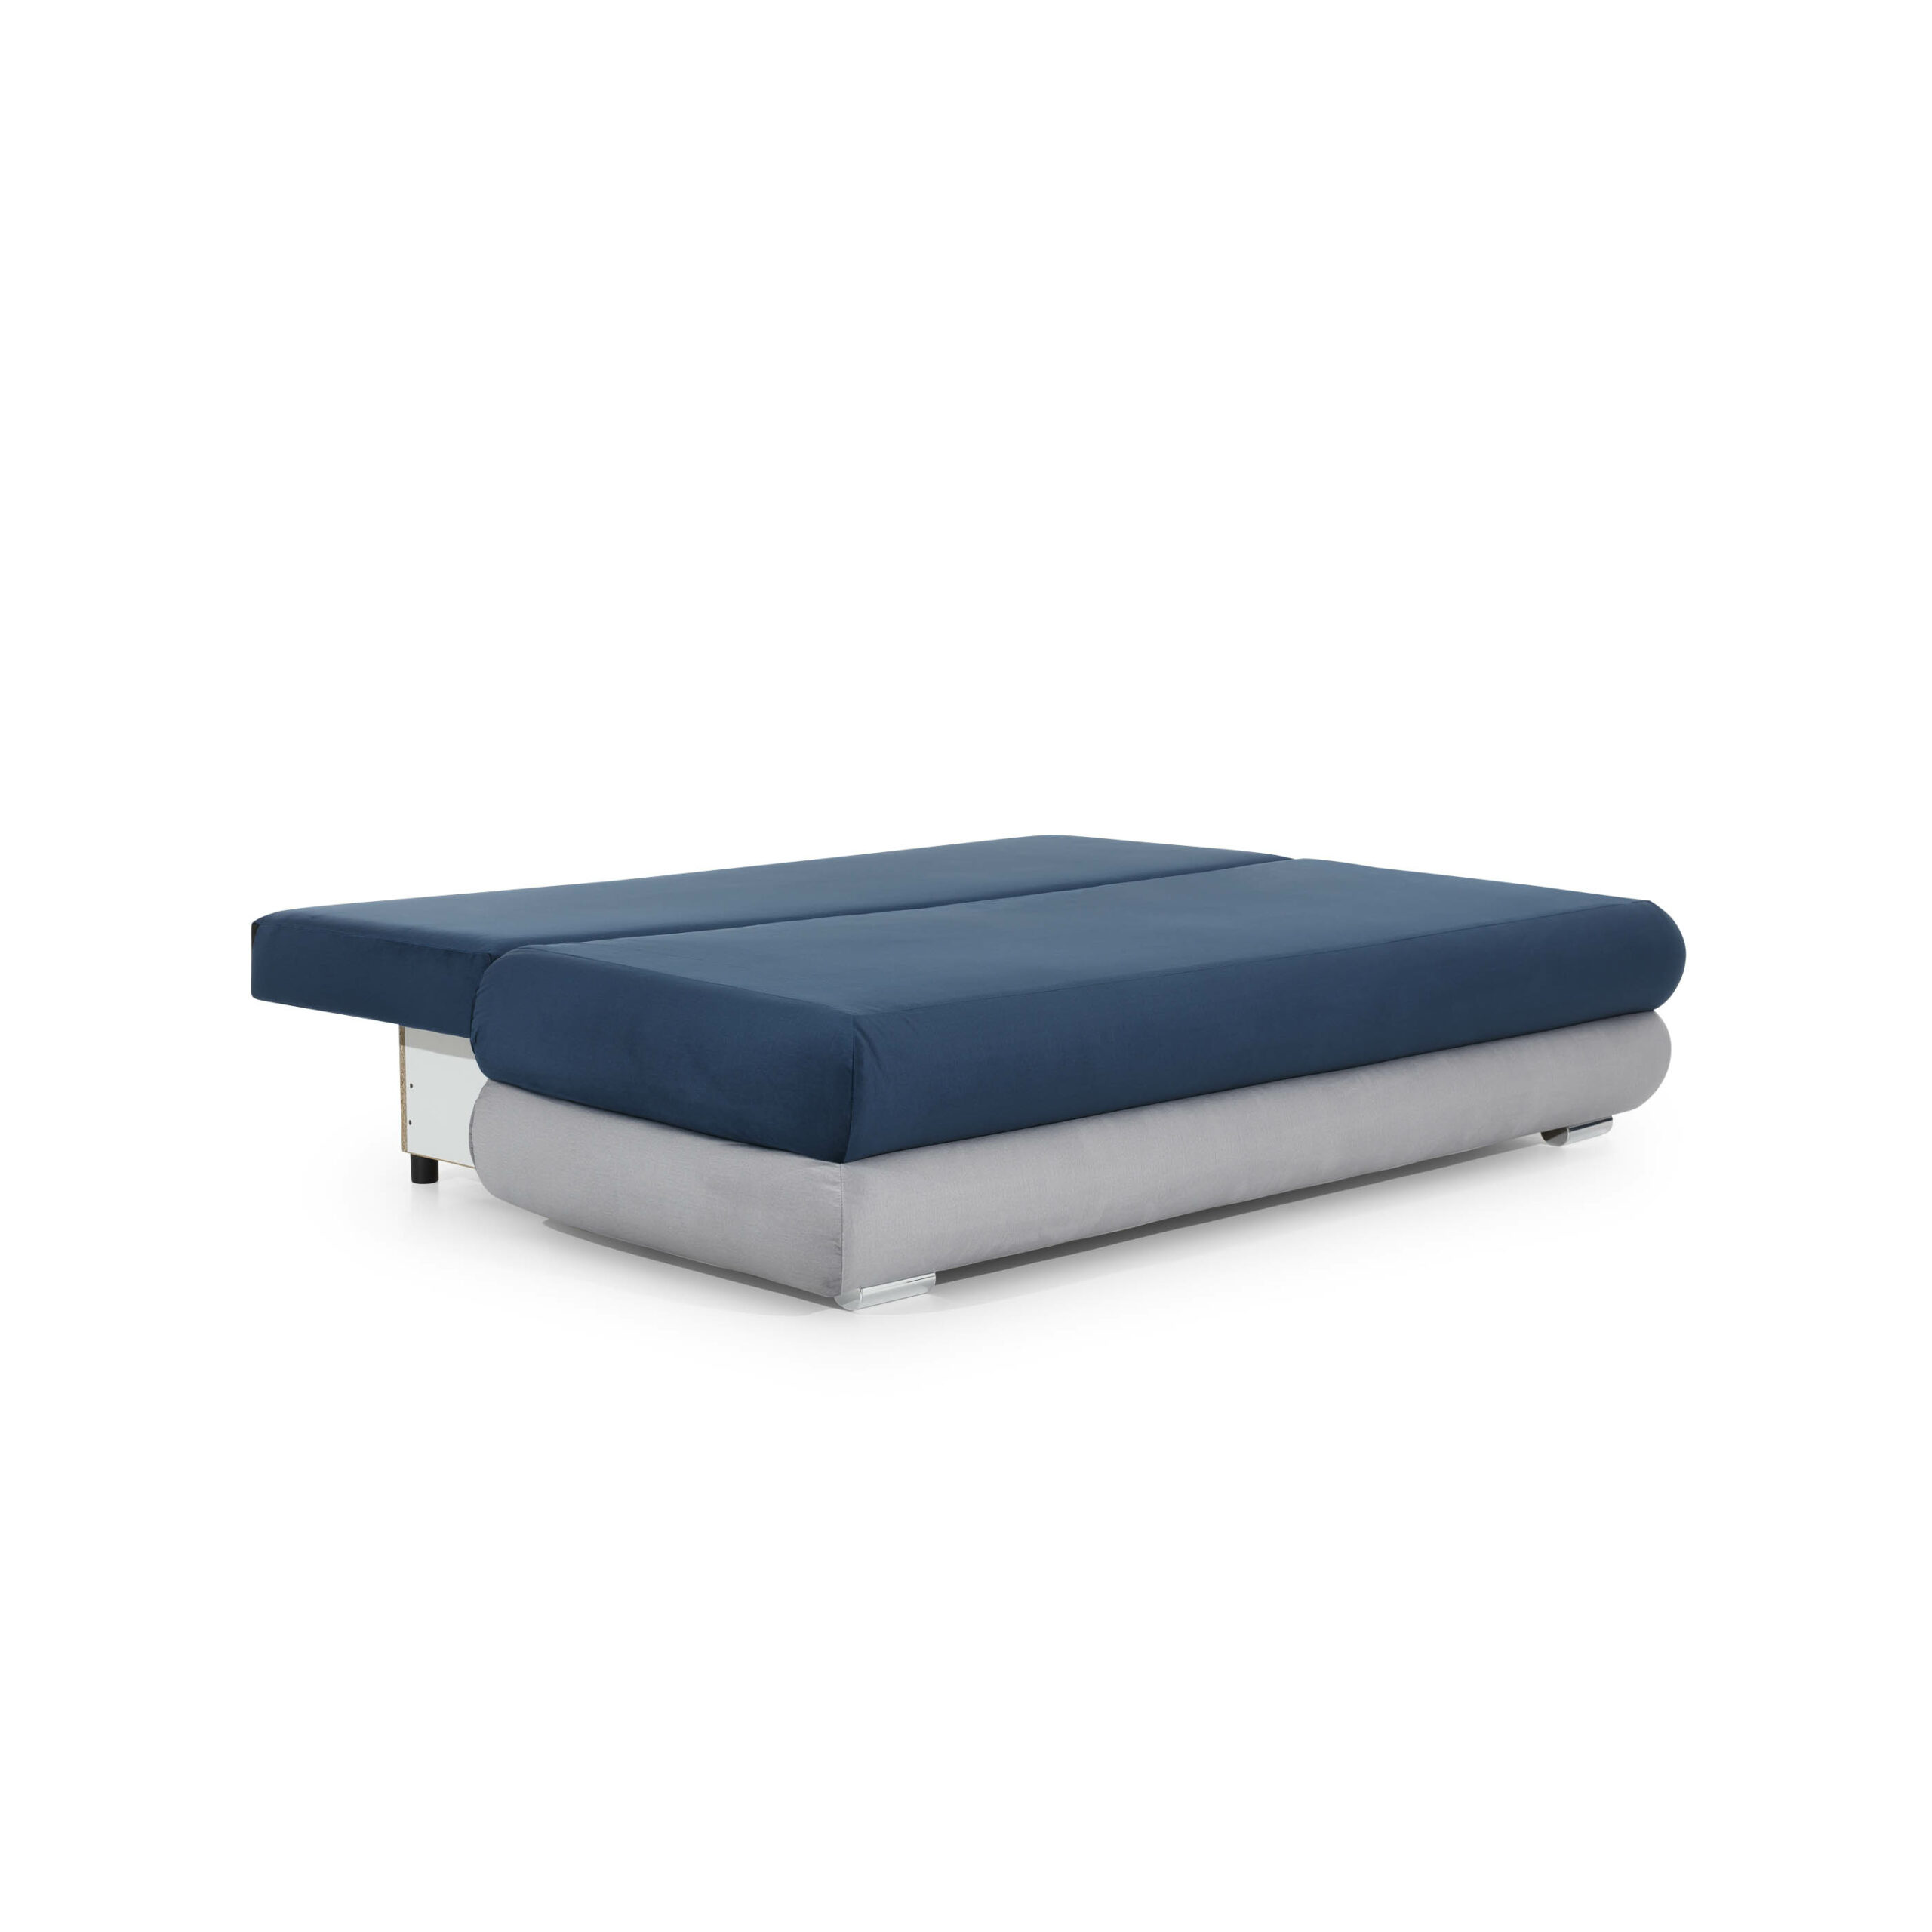 Schlafcouch mit Bettkasten - grau mit blau - Mars